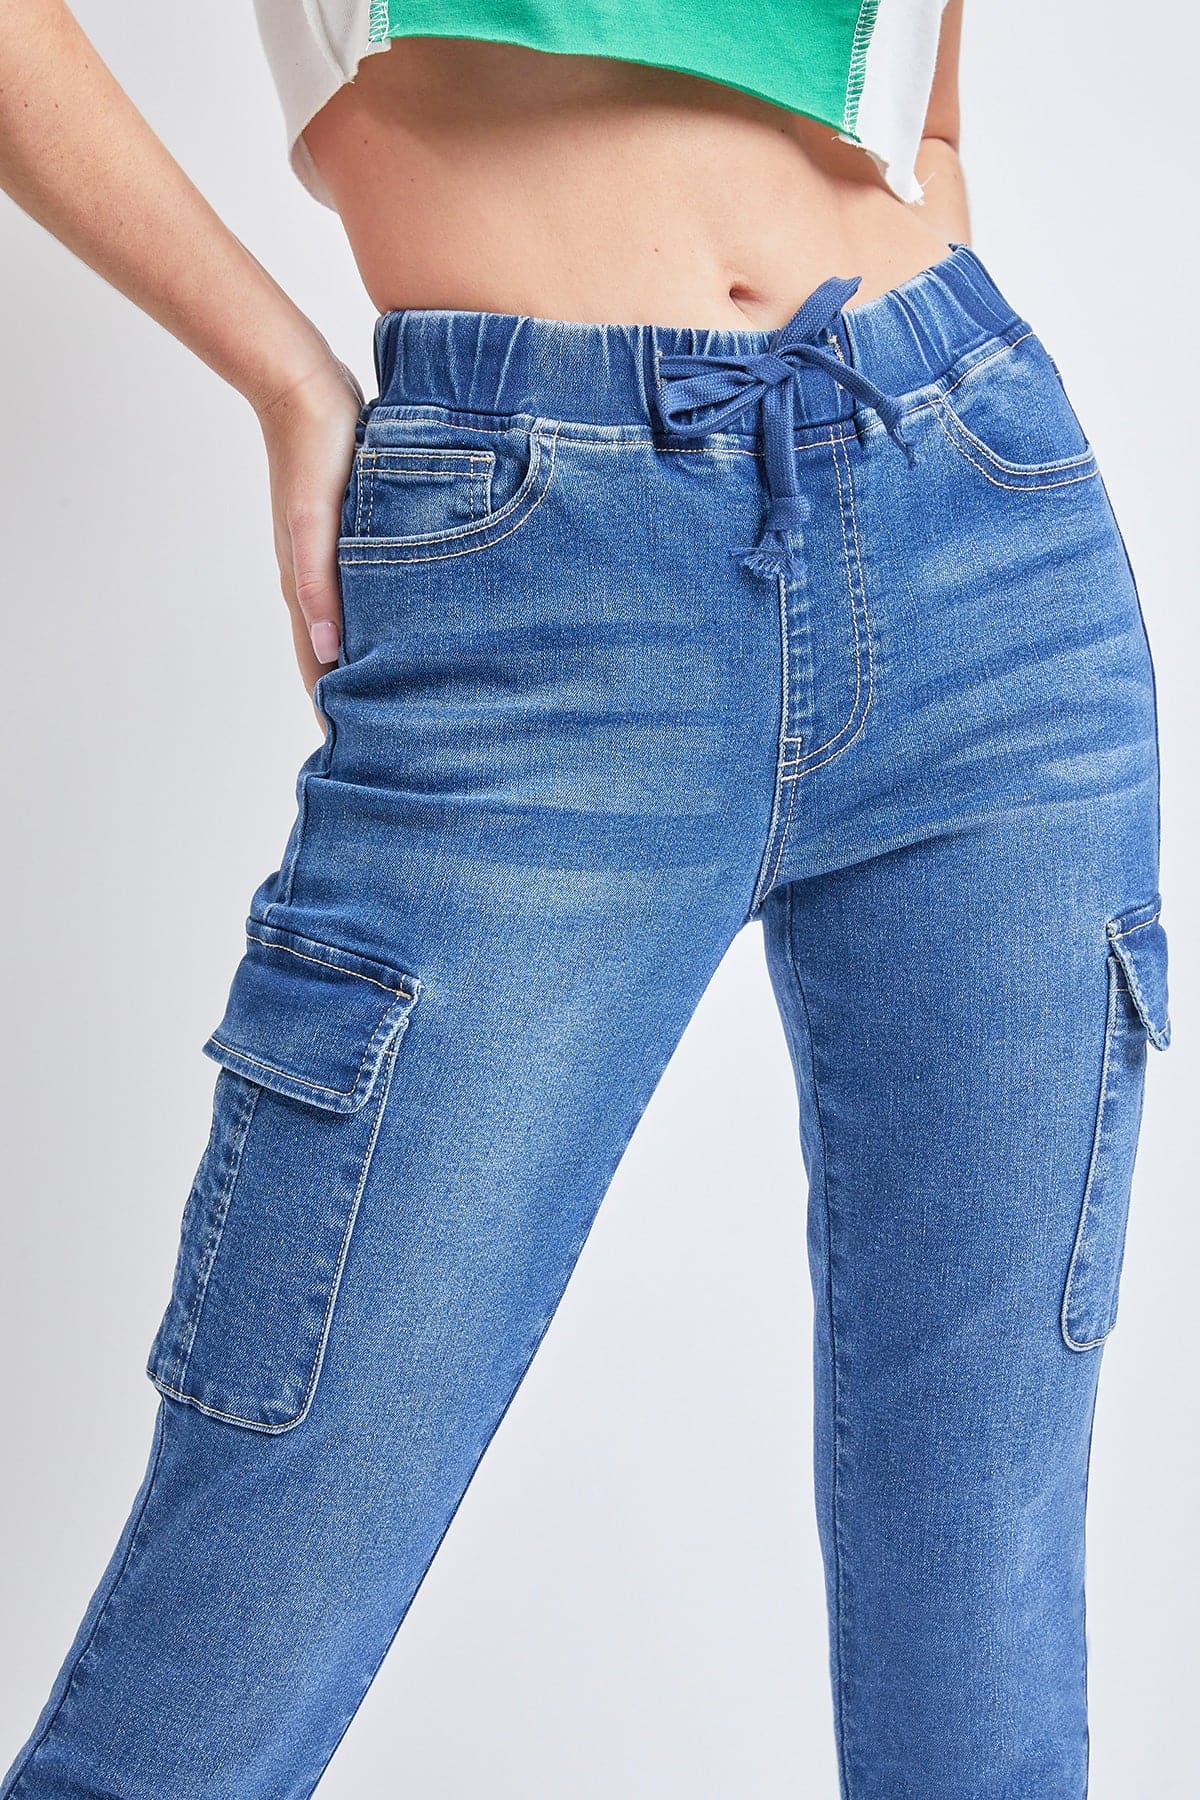 Women's Skinny Cargo Jeans